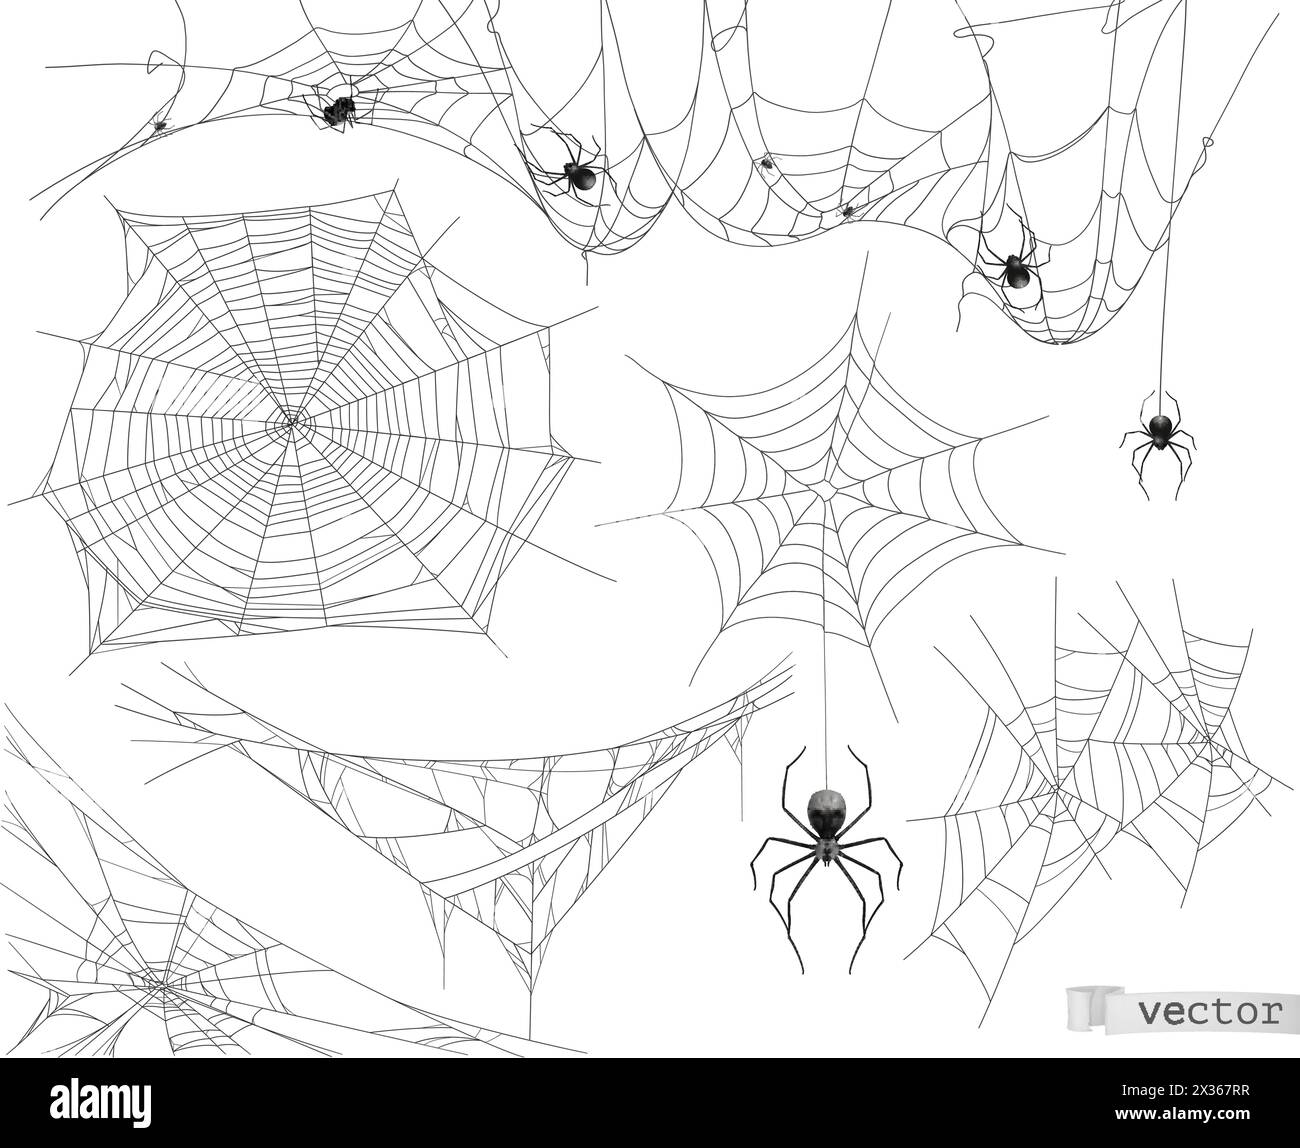 Toile d'araignée, ensemble vectoriel d'éléments Illustration de Vecteur